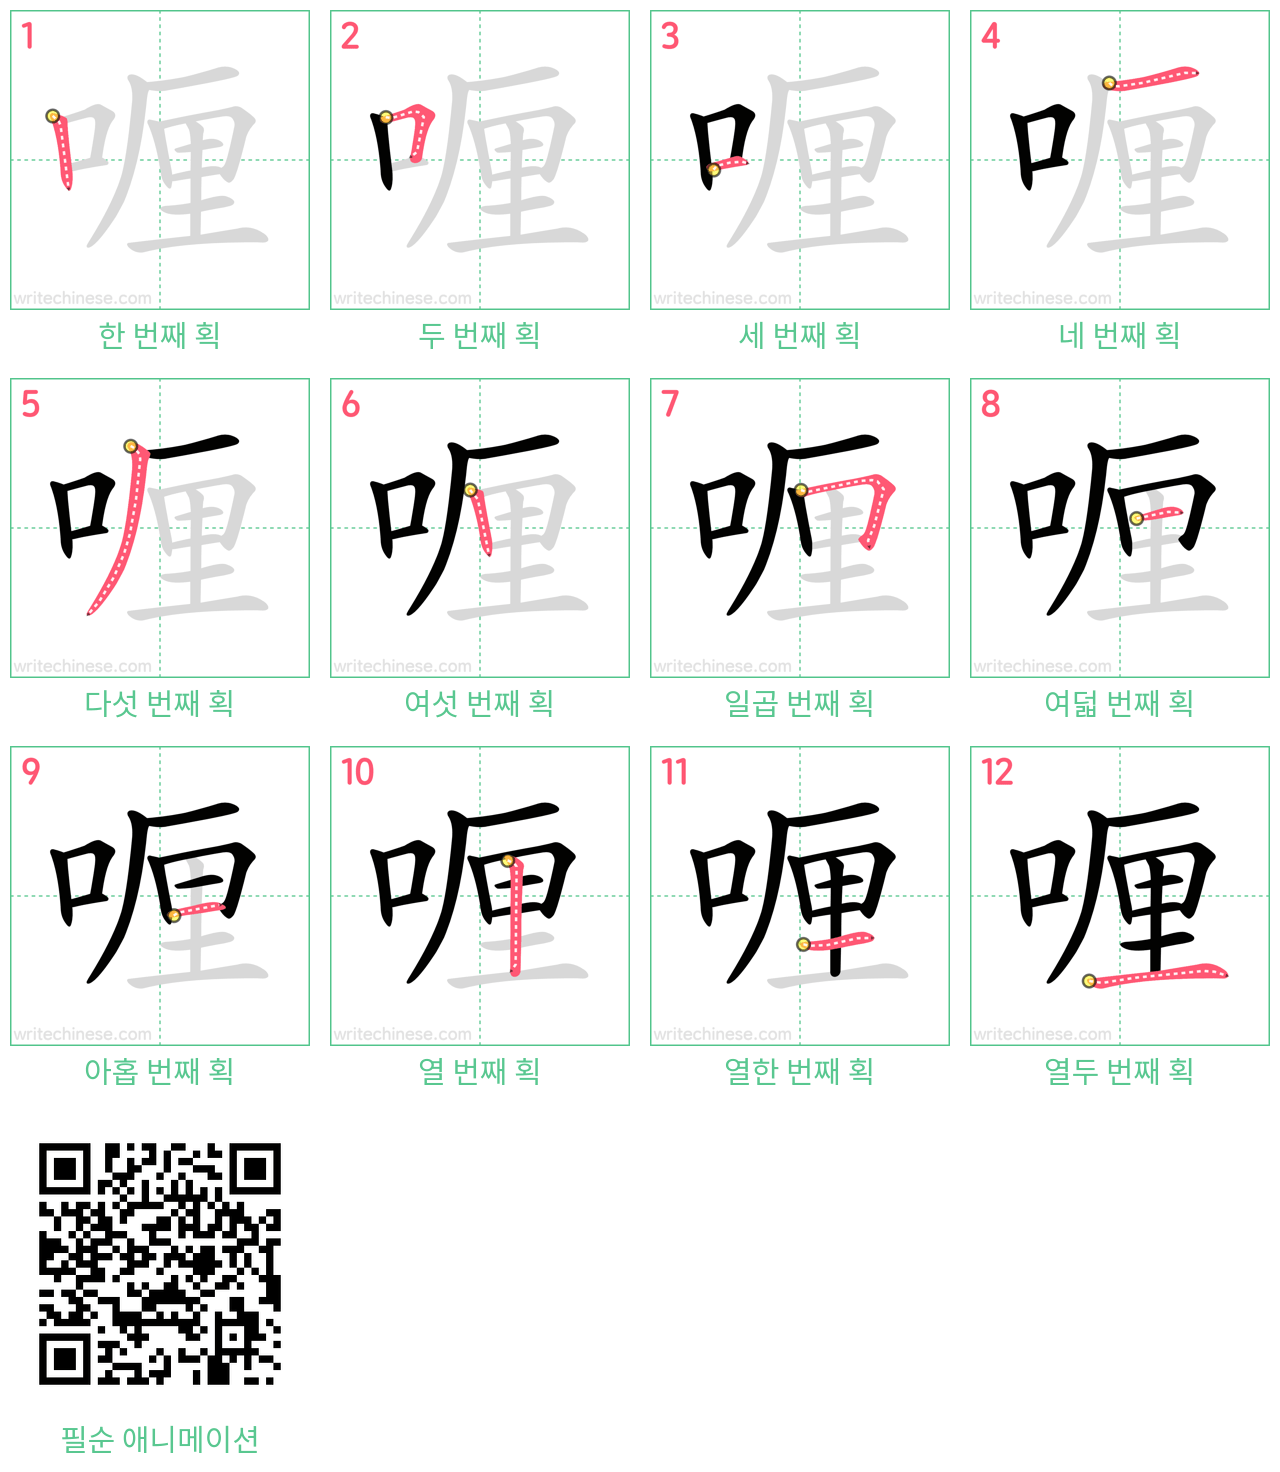 喱 step-by-step stroke order diagrams